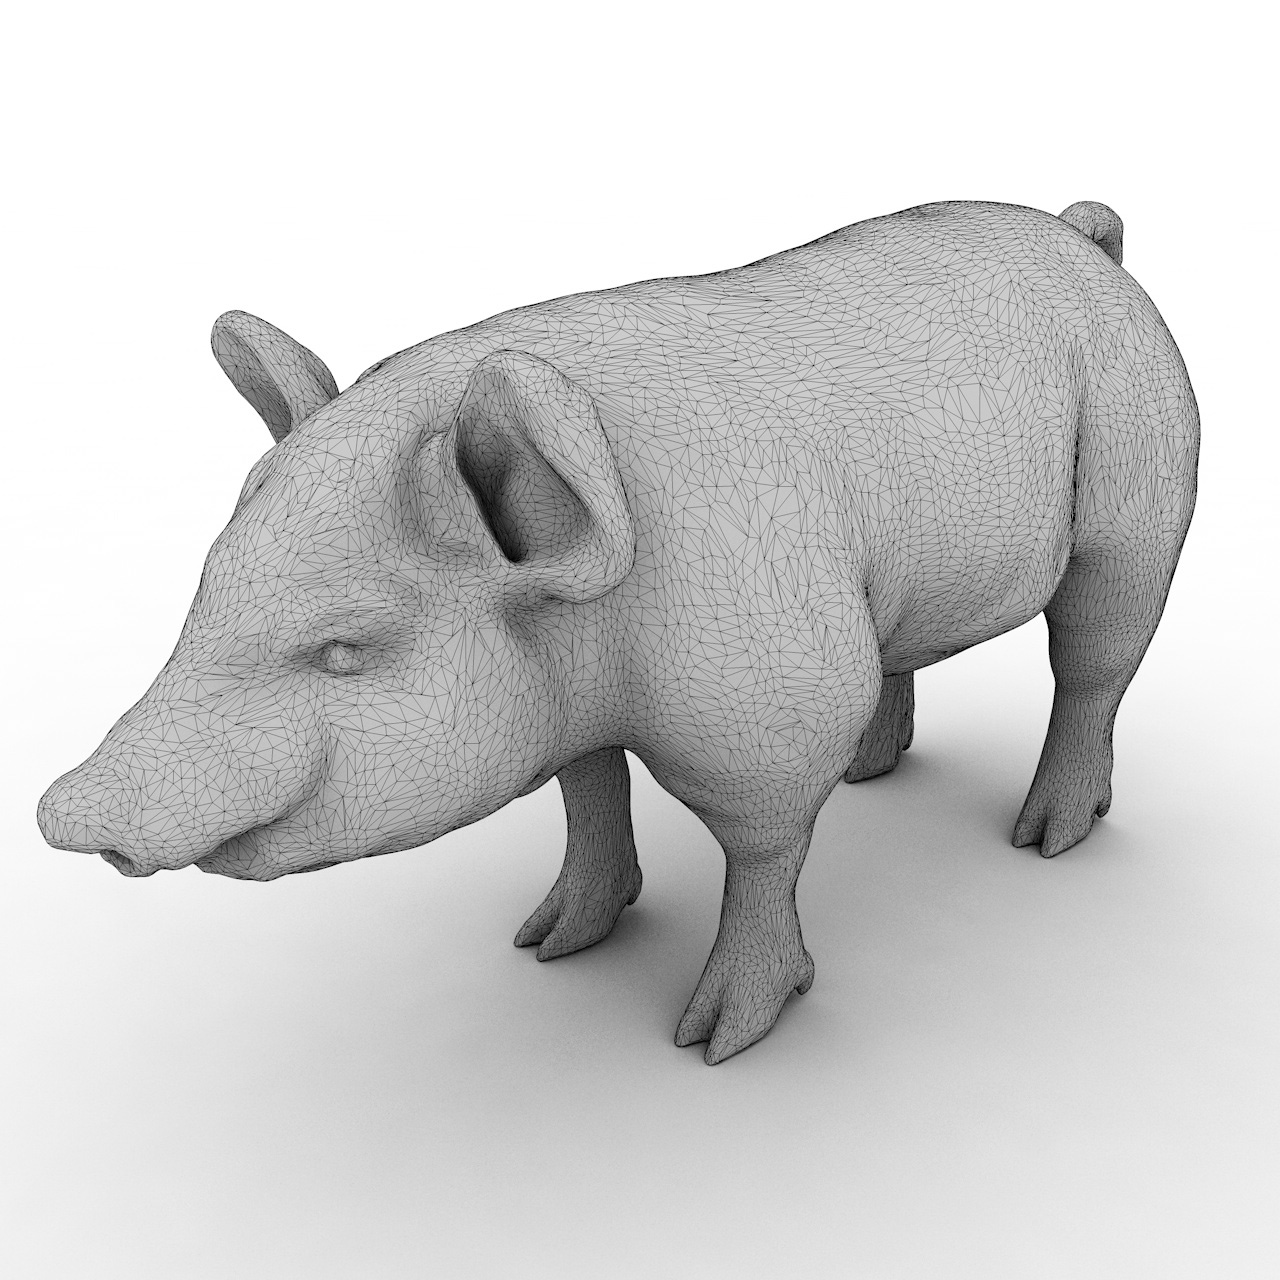 Modelo de impresión 3d de cerdo